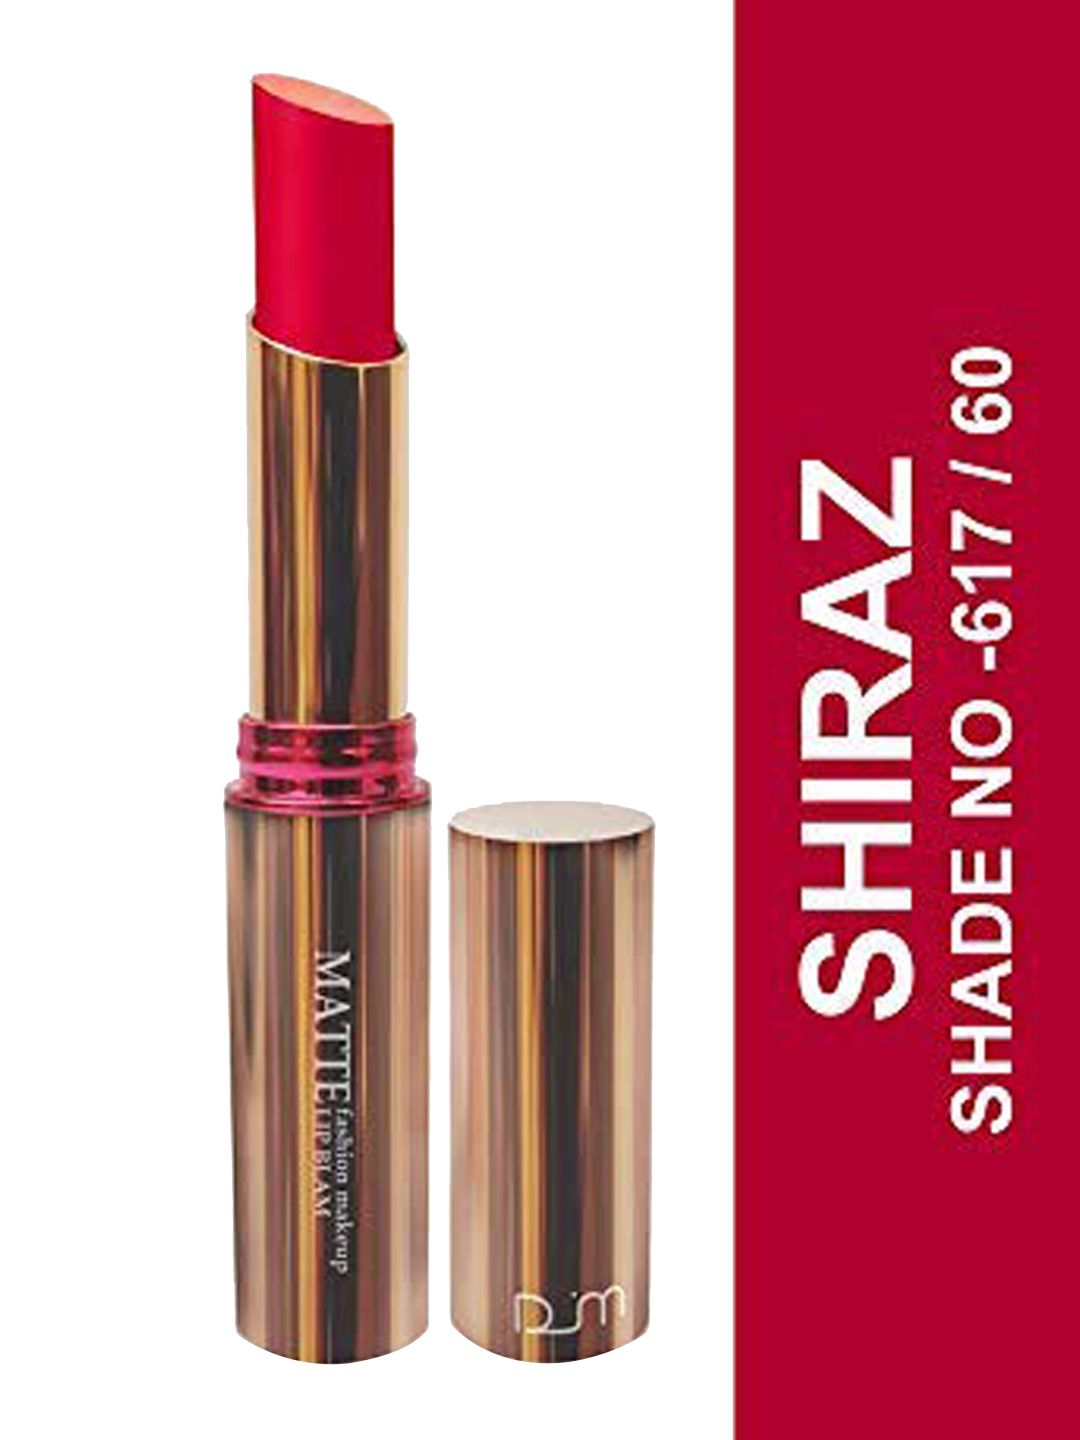 Seven Seas Matte With You Lipstick, 3.8g - Shiraz Price in India